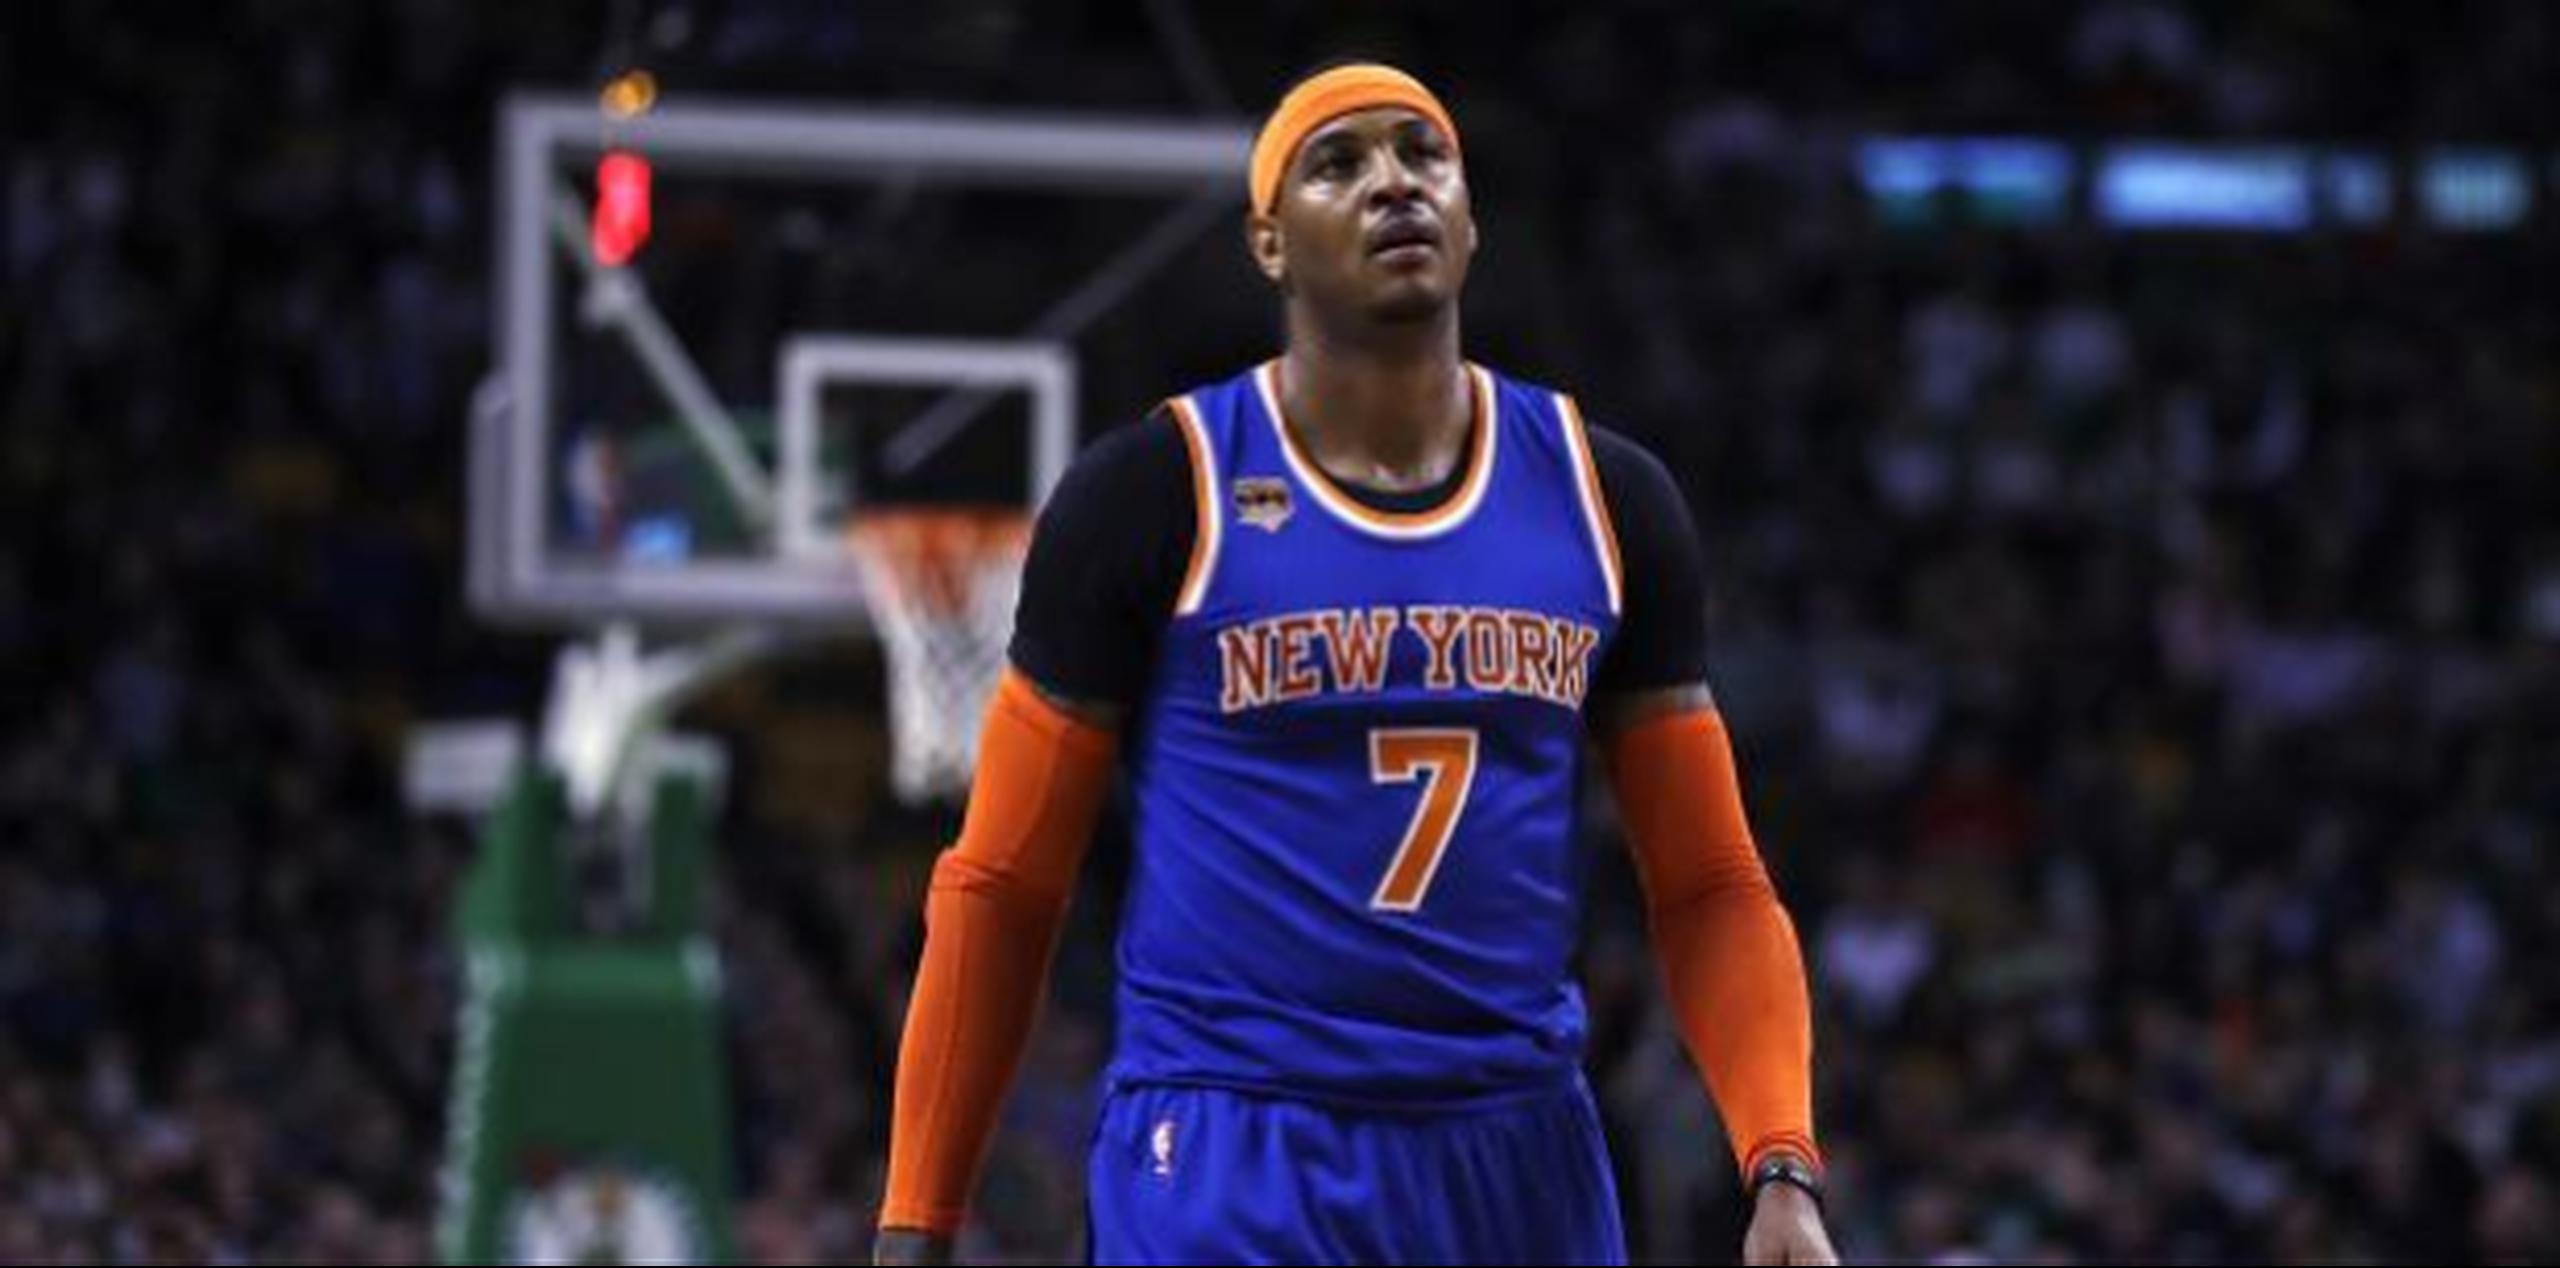 LeBron James defendió el deseo de su amigo Carmelo Anthony de continuar jugando en Nueva York si así lo desea. (Archvo)